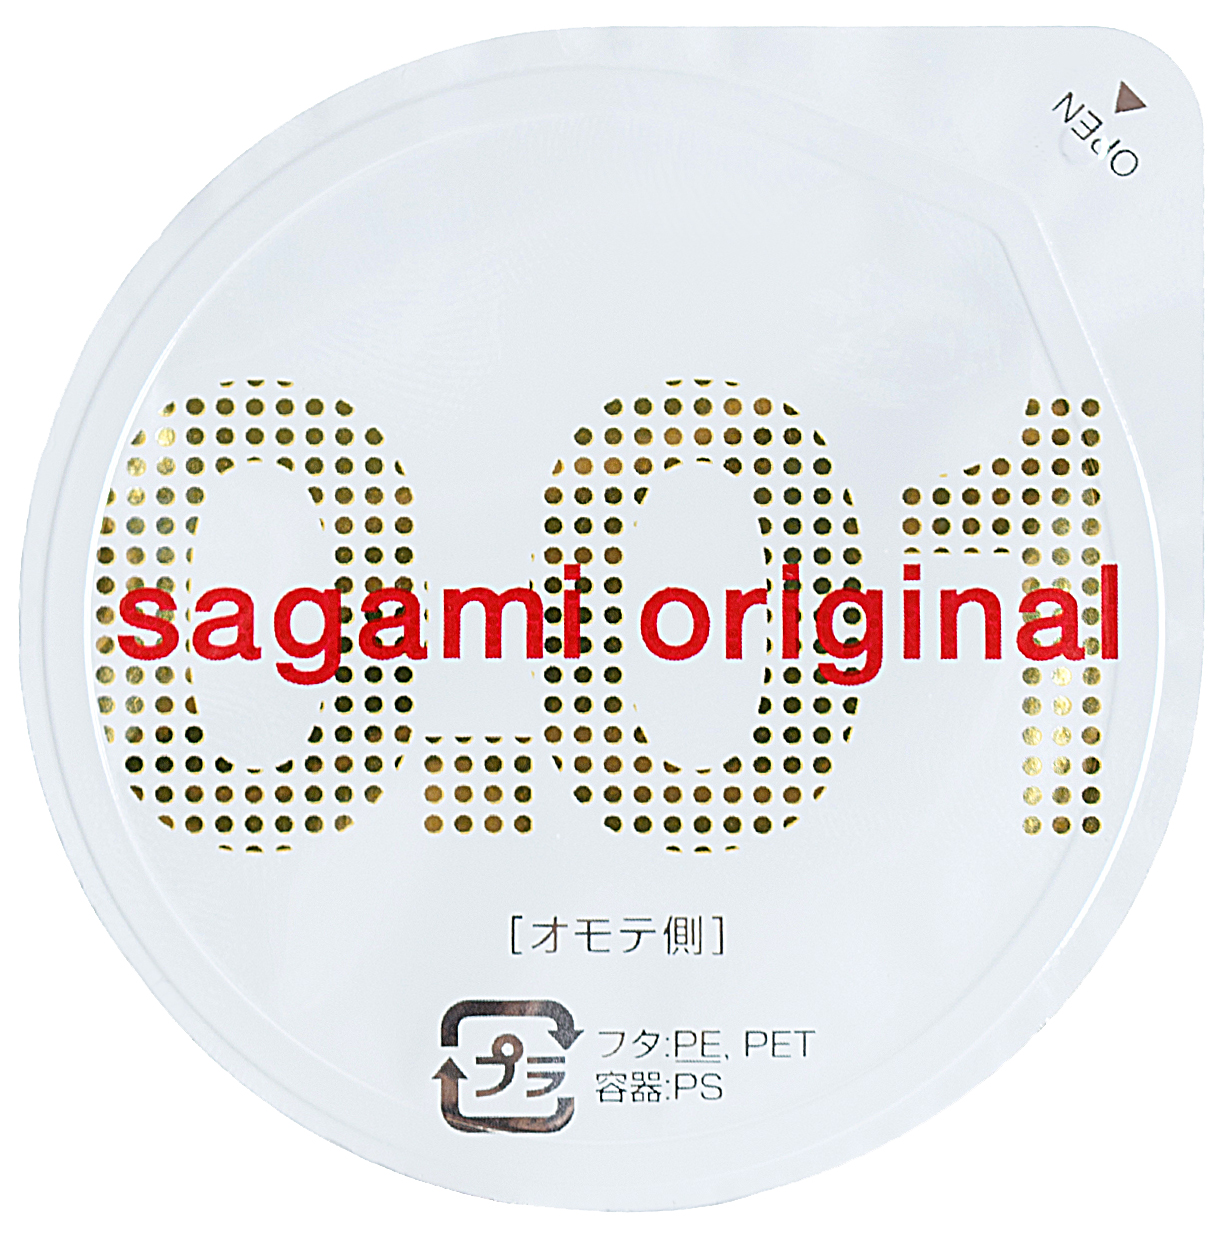 Купить Sagami Rubber Industries Co. Ltd. Презервативы SAGAMI Original 001 полиуретановые 1шт.